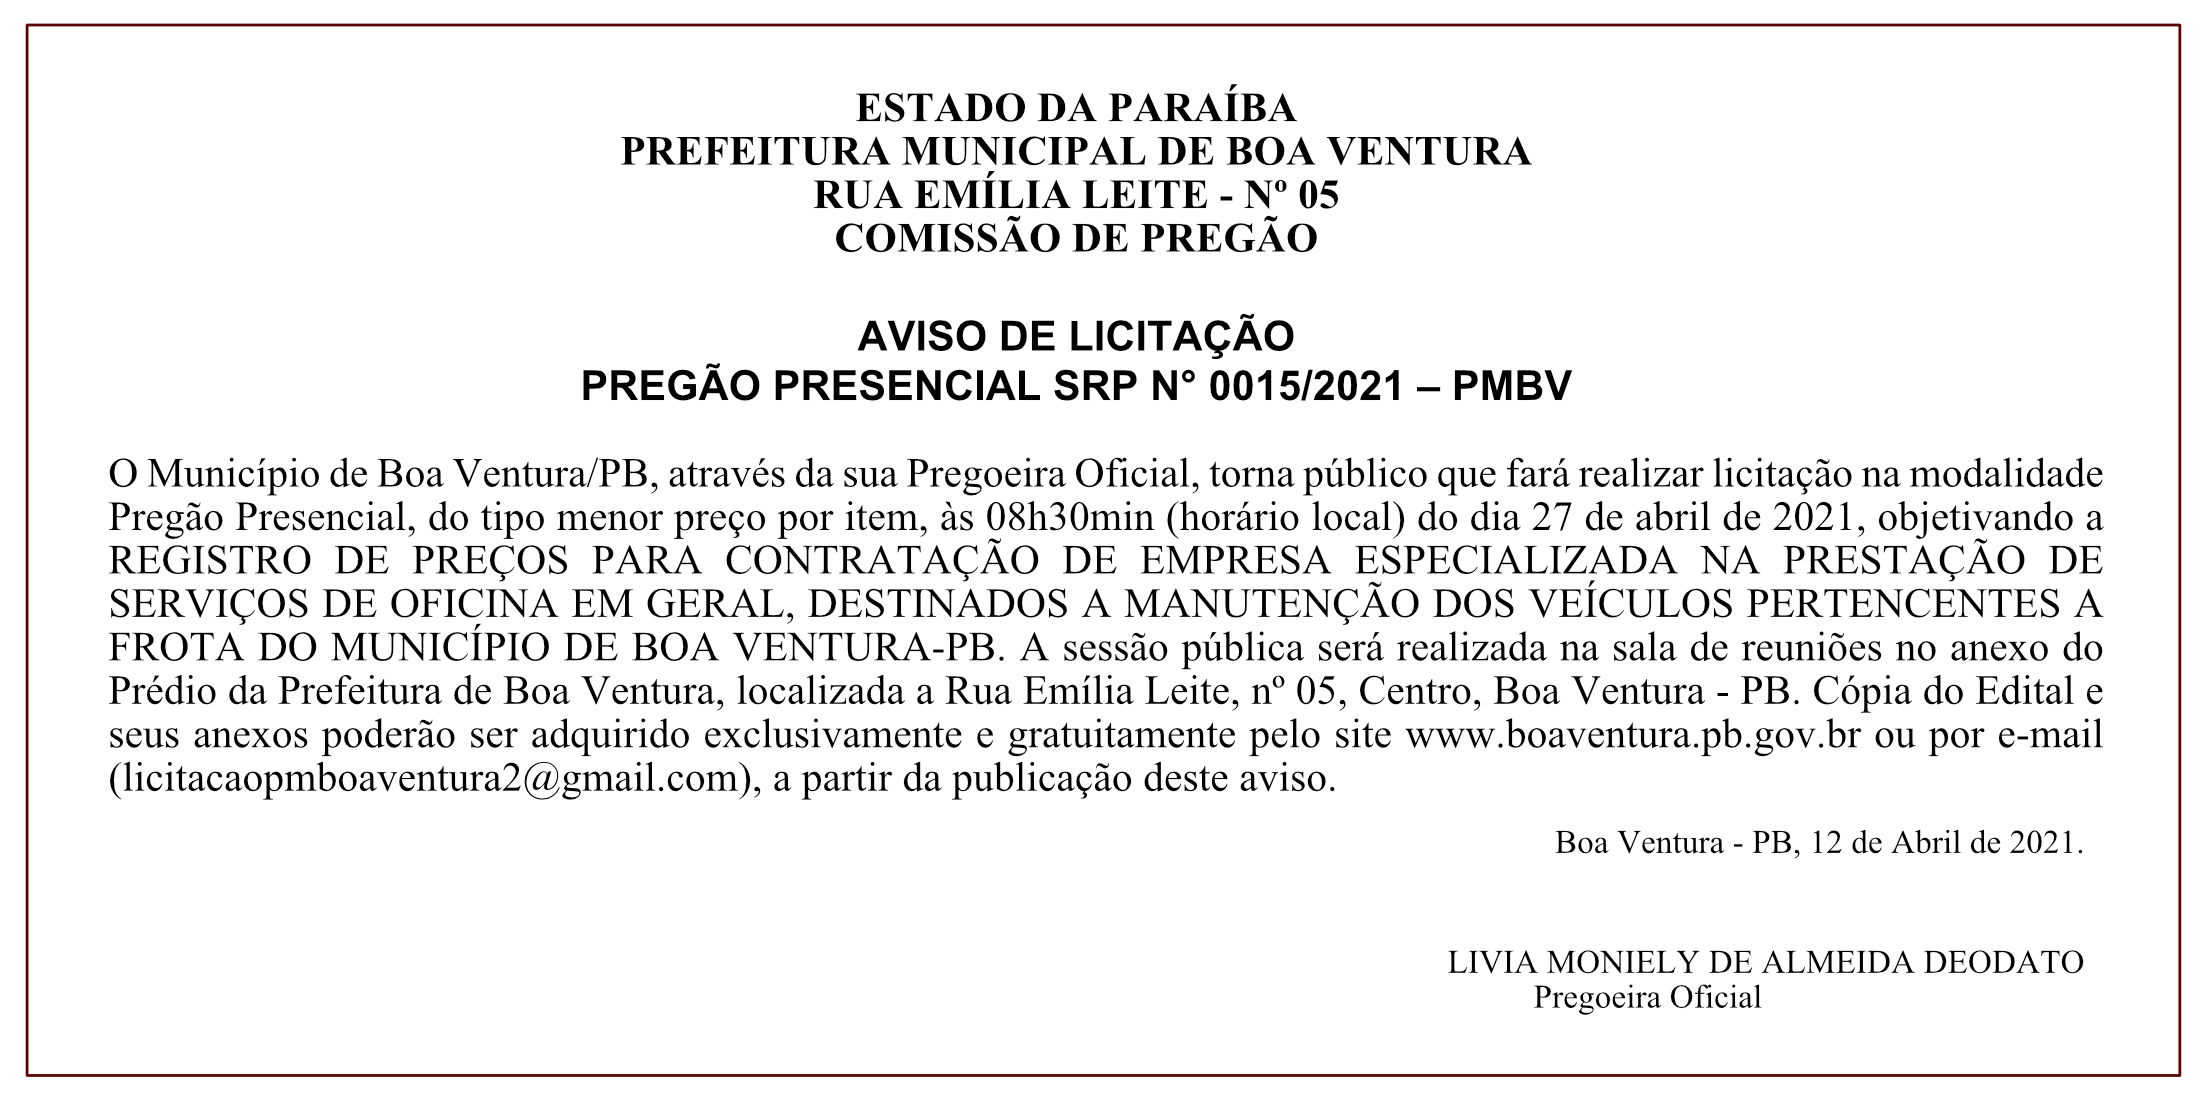 PREFEITURA MUNICIPAL DE BOA VENTURA – COMISSÃO DE PREGÃO – AVISO DE LICITAÇÃO – PREGÃO PRESENCIAL SRP N° 0015/2021